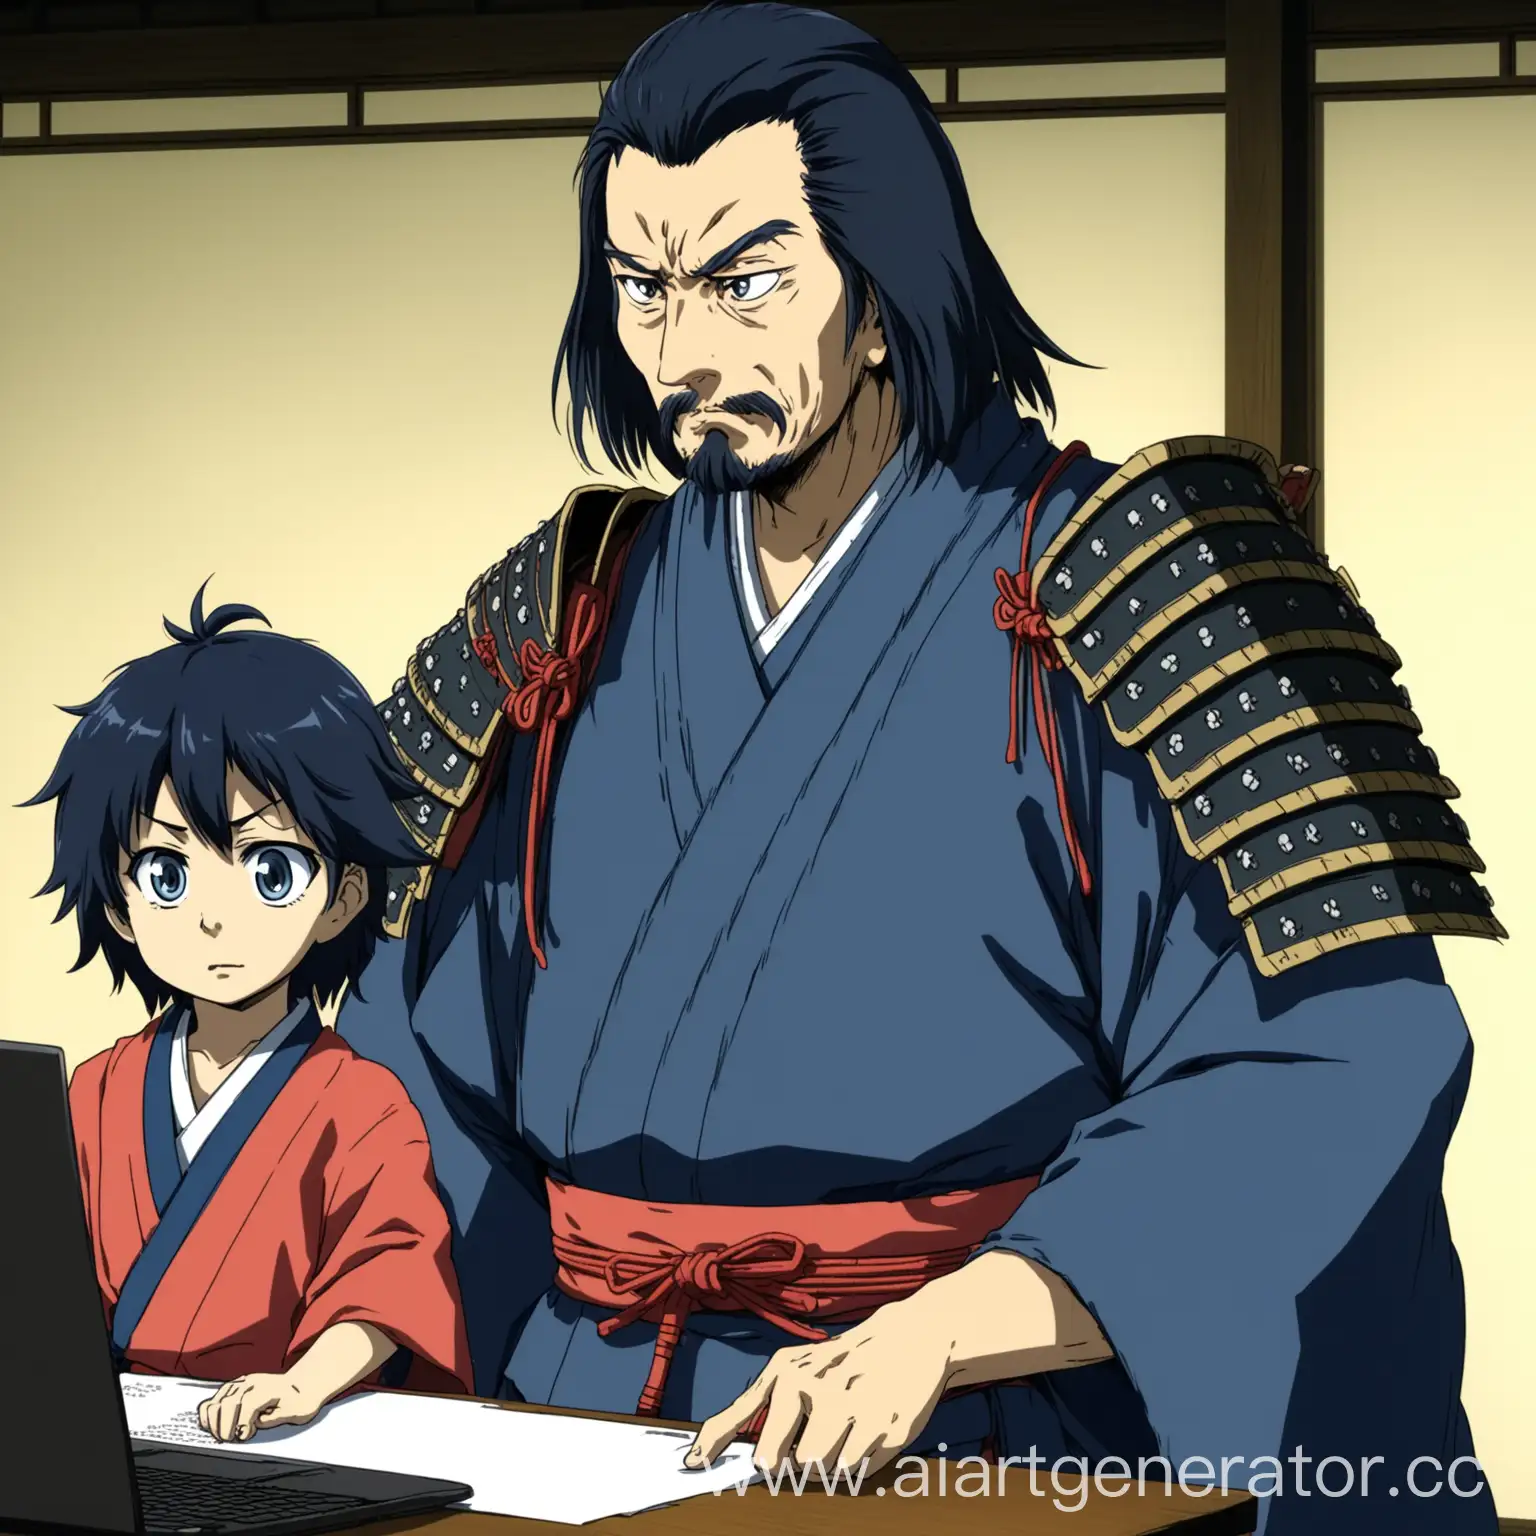 старый самурай учит молодого самурая программированию на языке typescript в стиле аниме